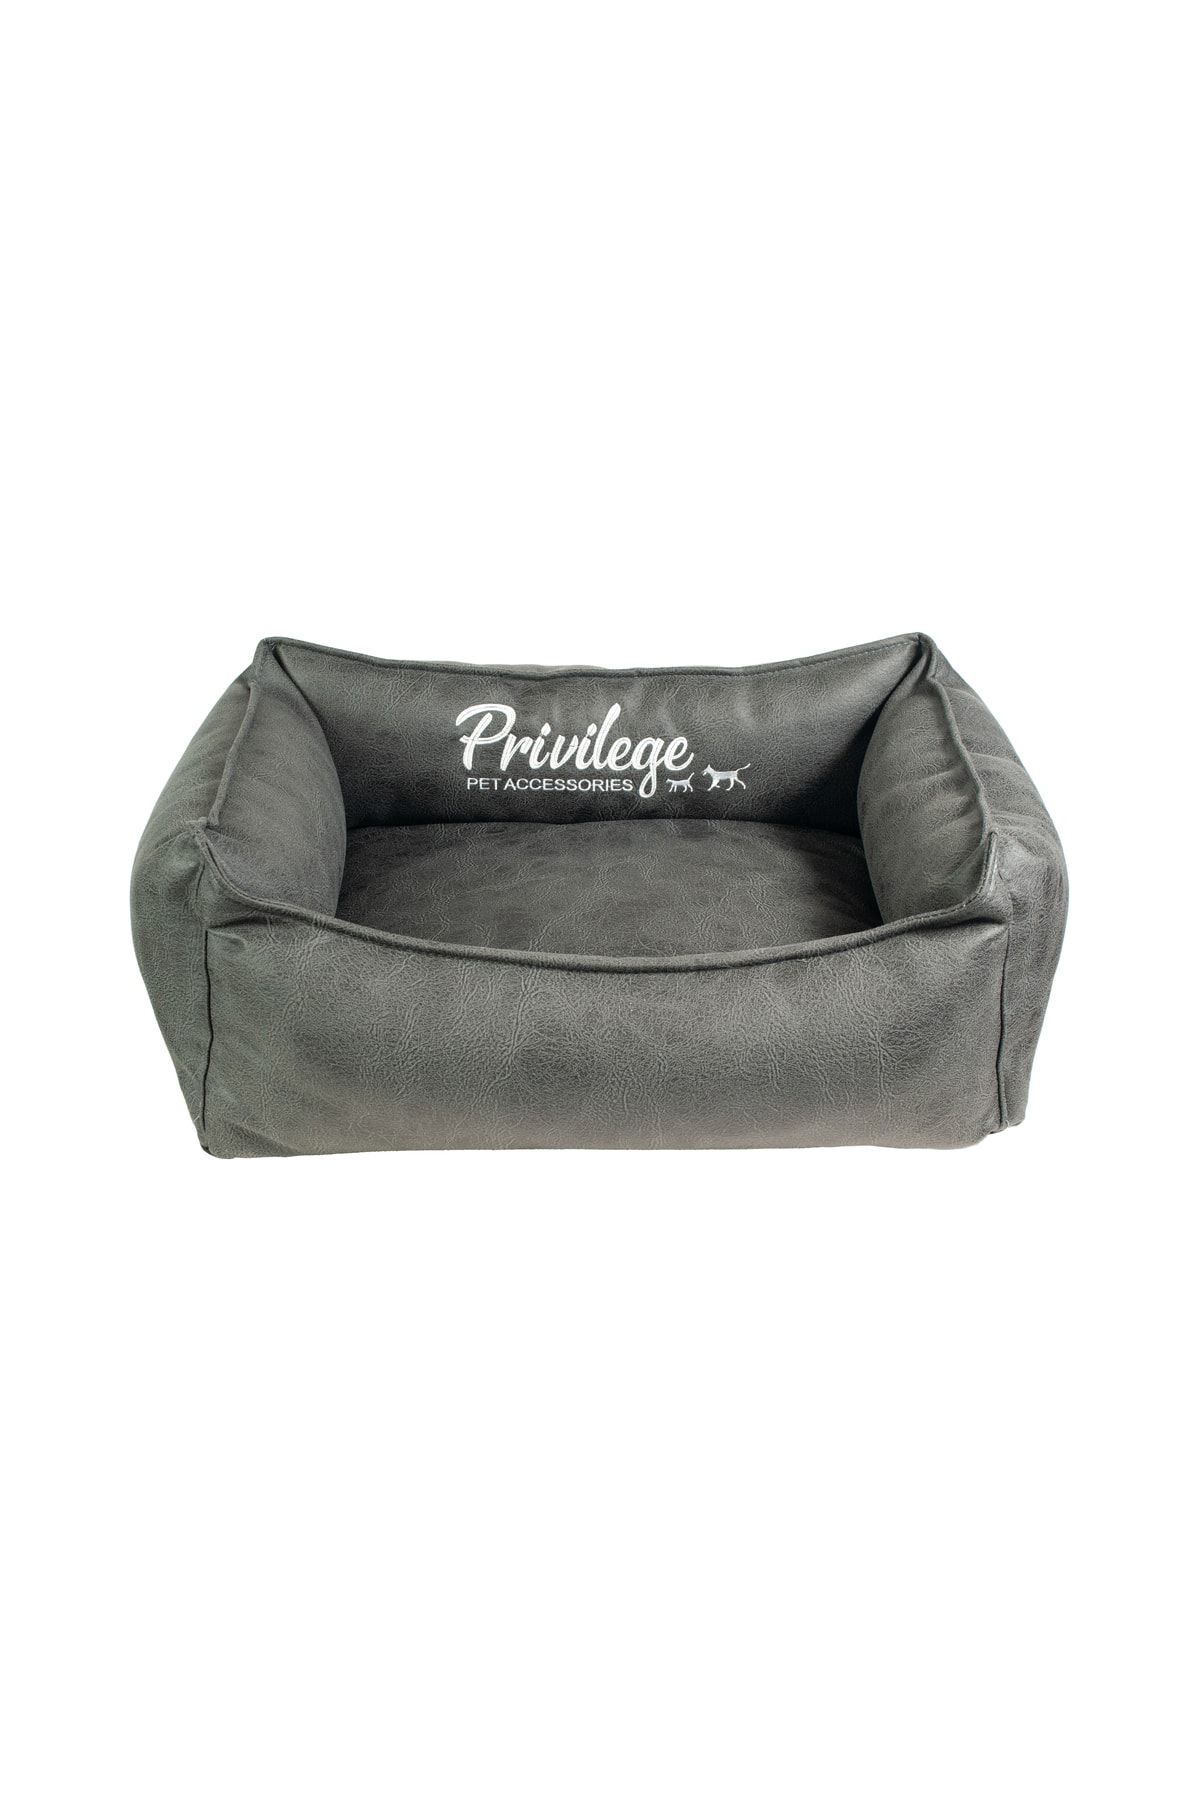 Privilege Premium Visco Kedi Yatağı Siyah Medium 50x70x22 Cm